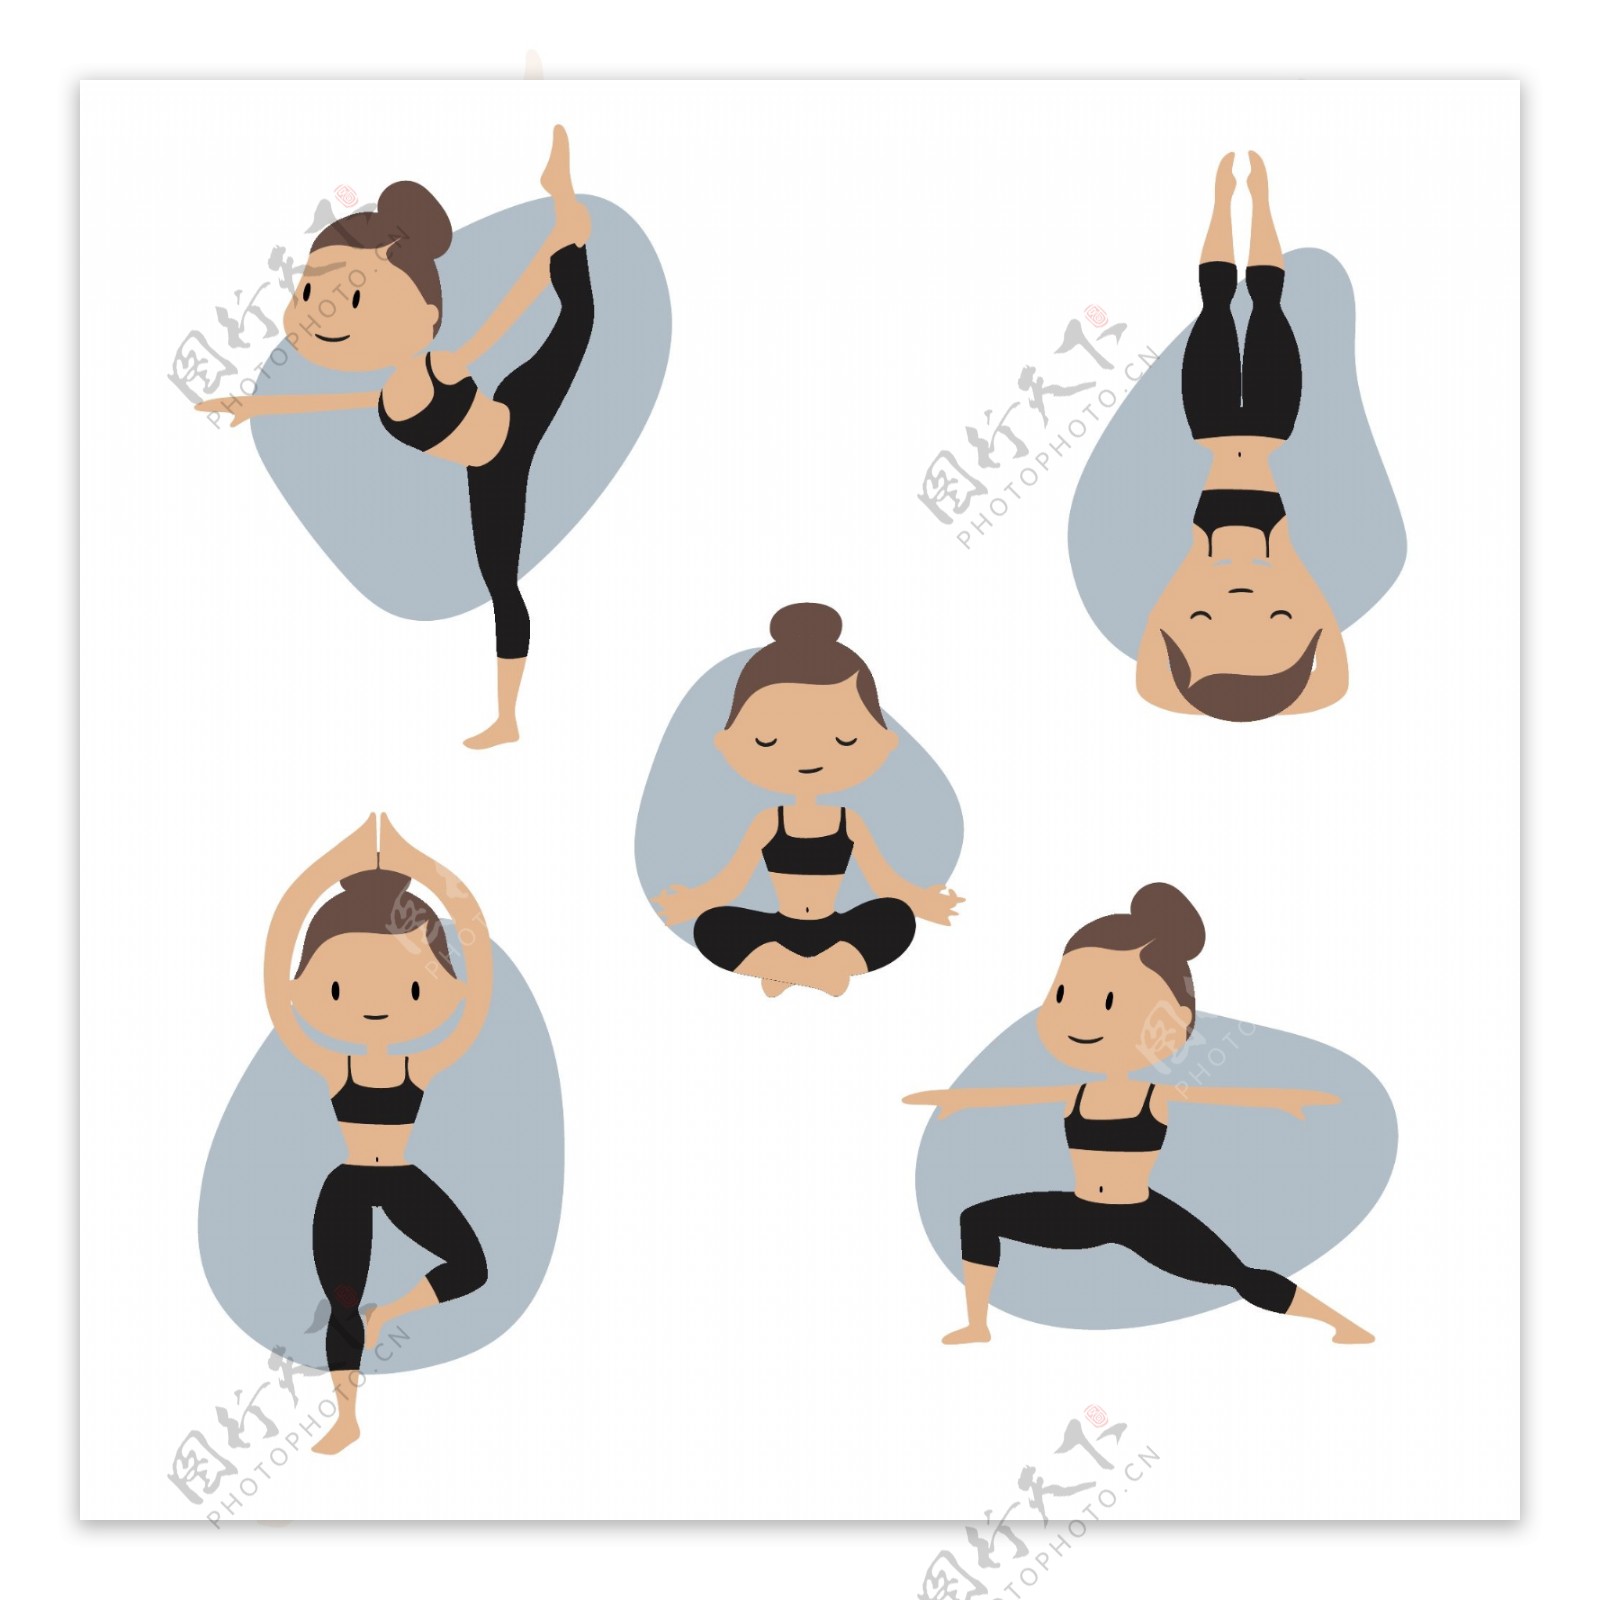 五款卡通女子瑜伽动作元素